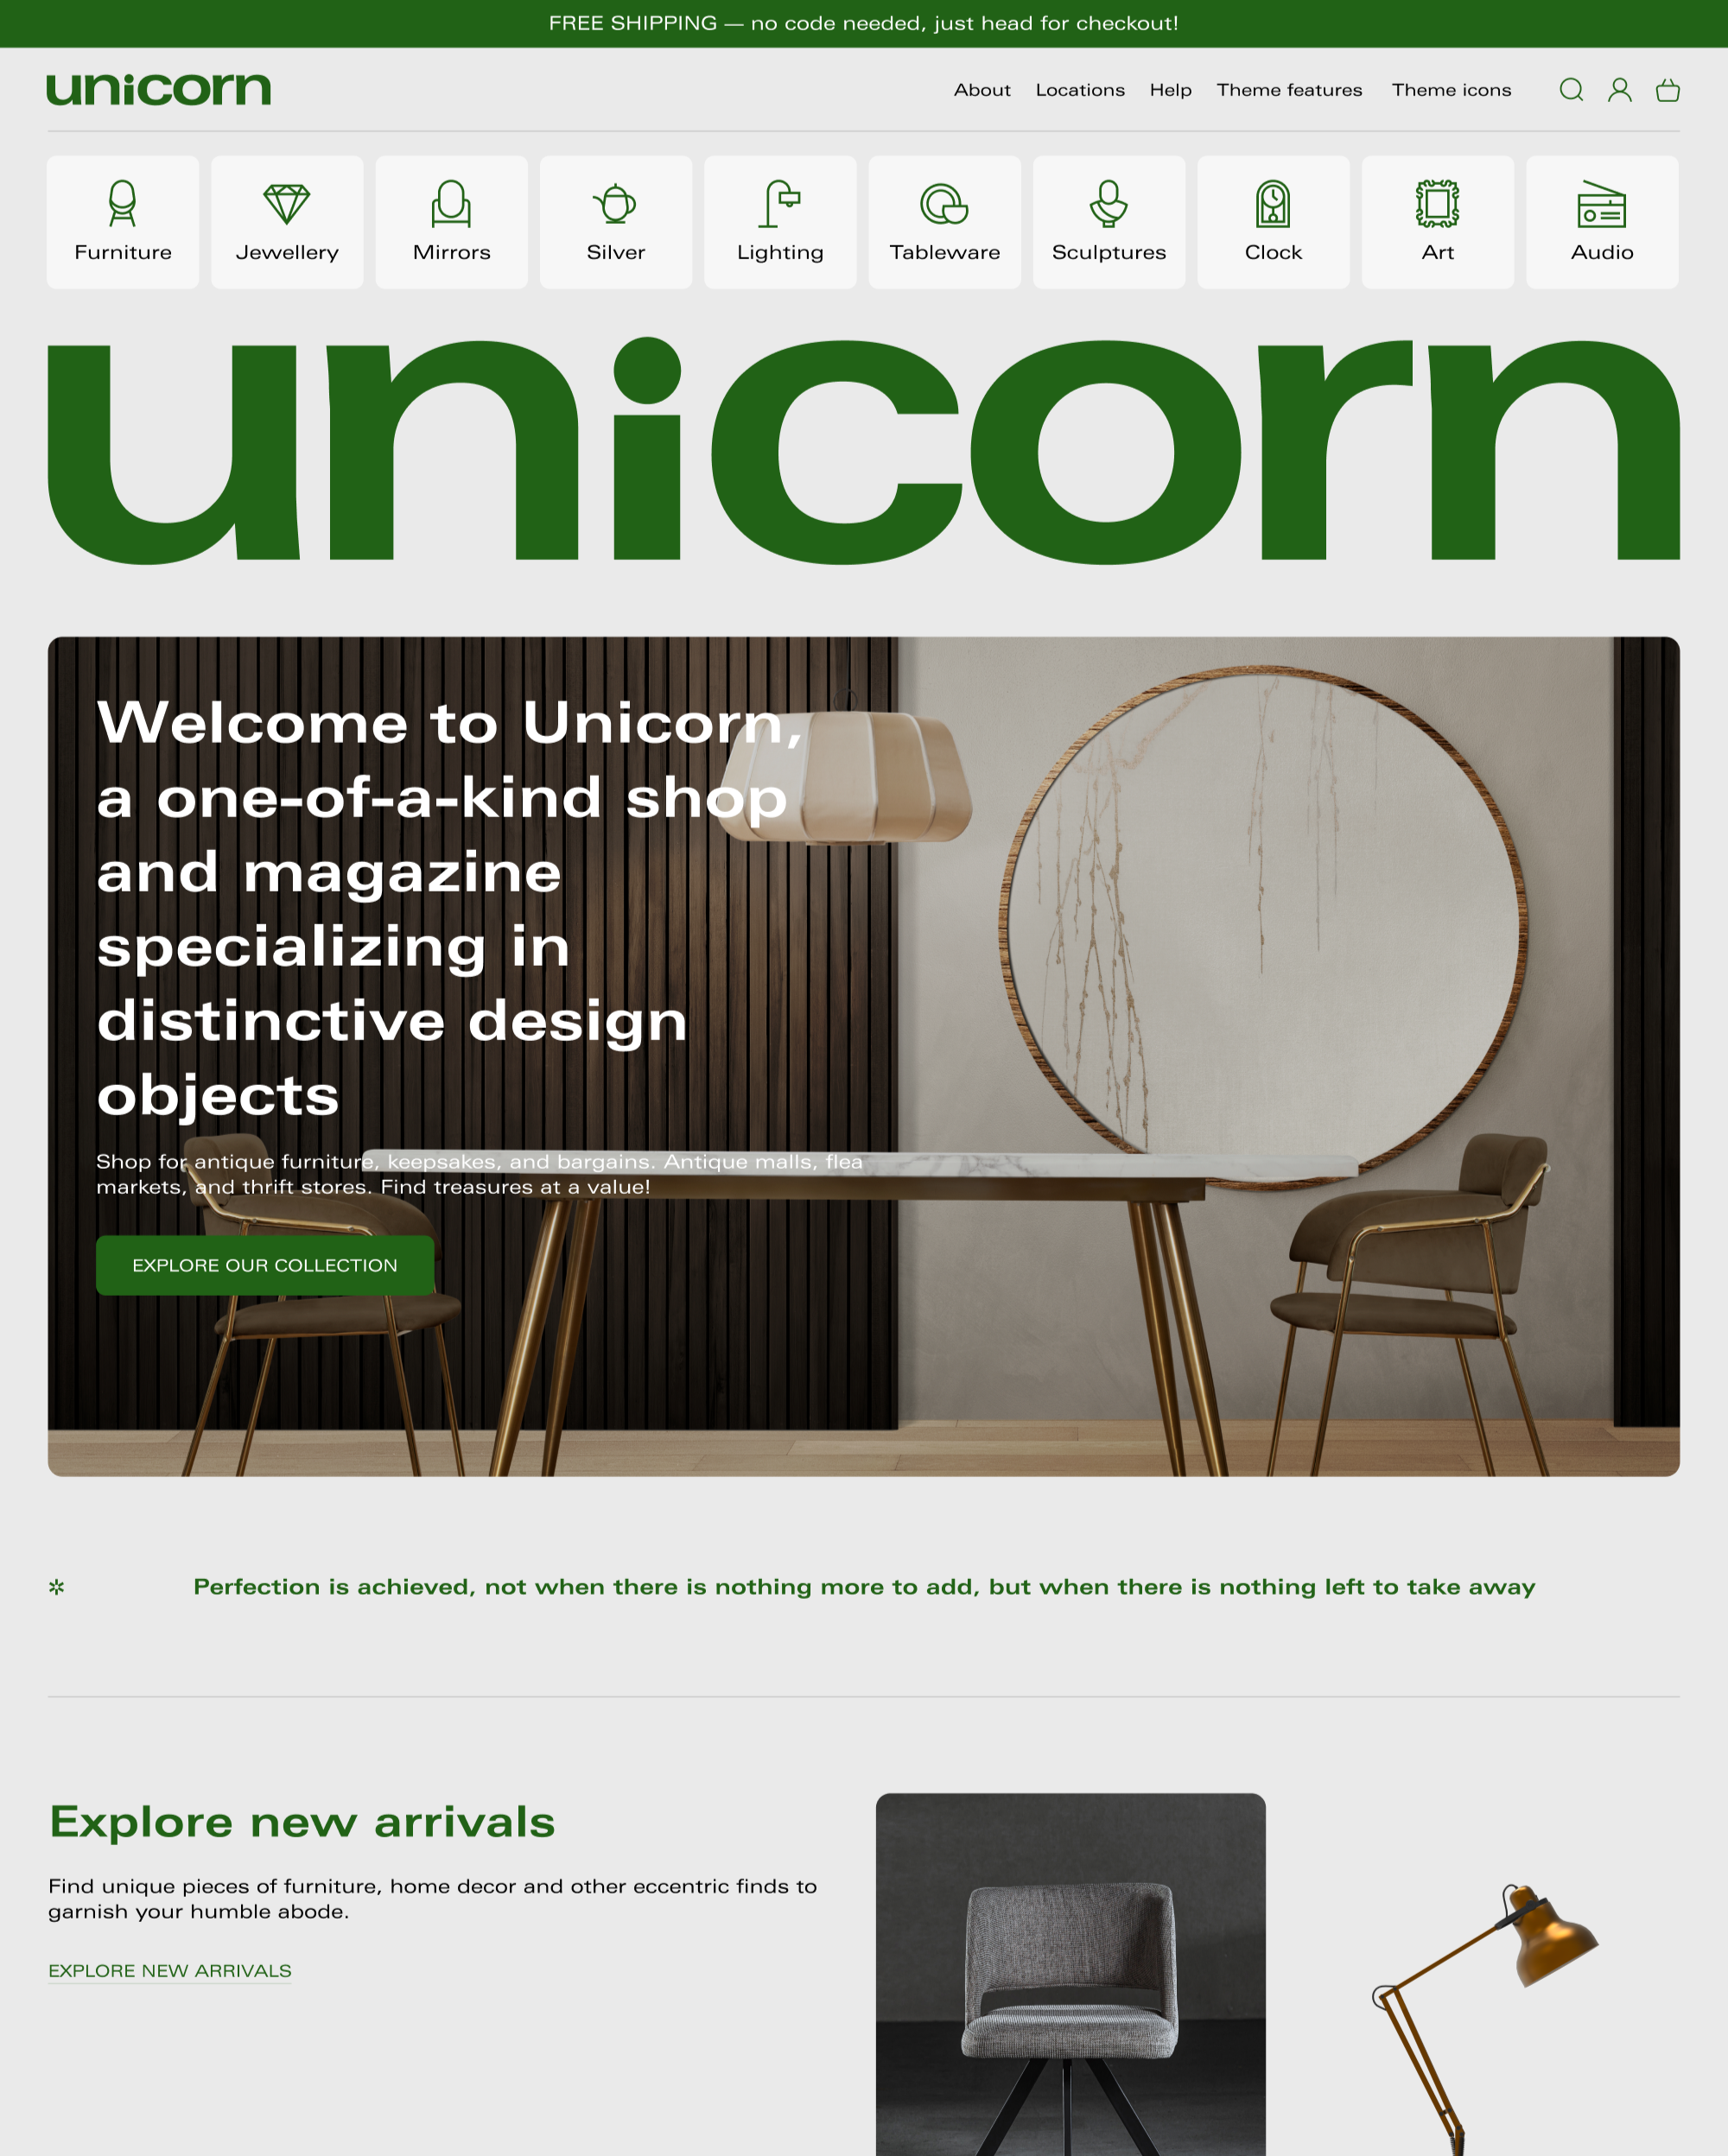 Aperçu de la version pour ordinateur du thème Unicorn dans le style « Valuable »